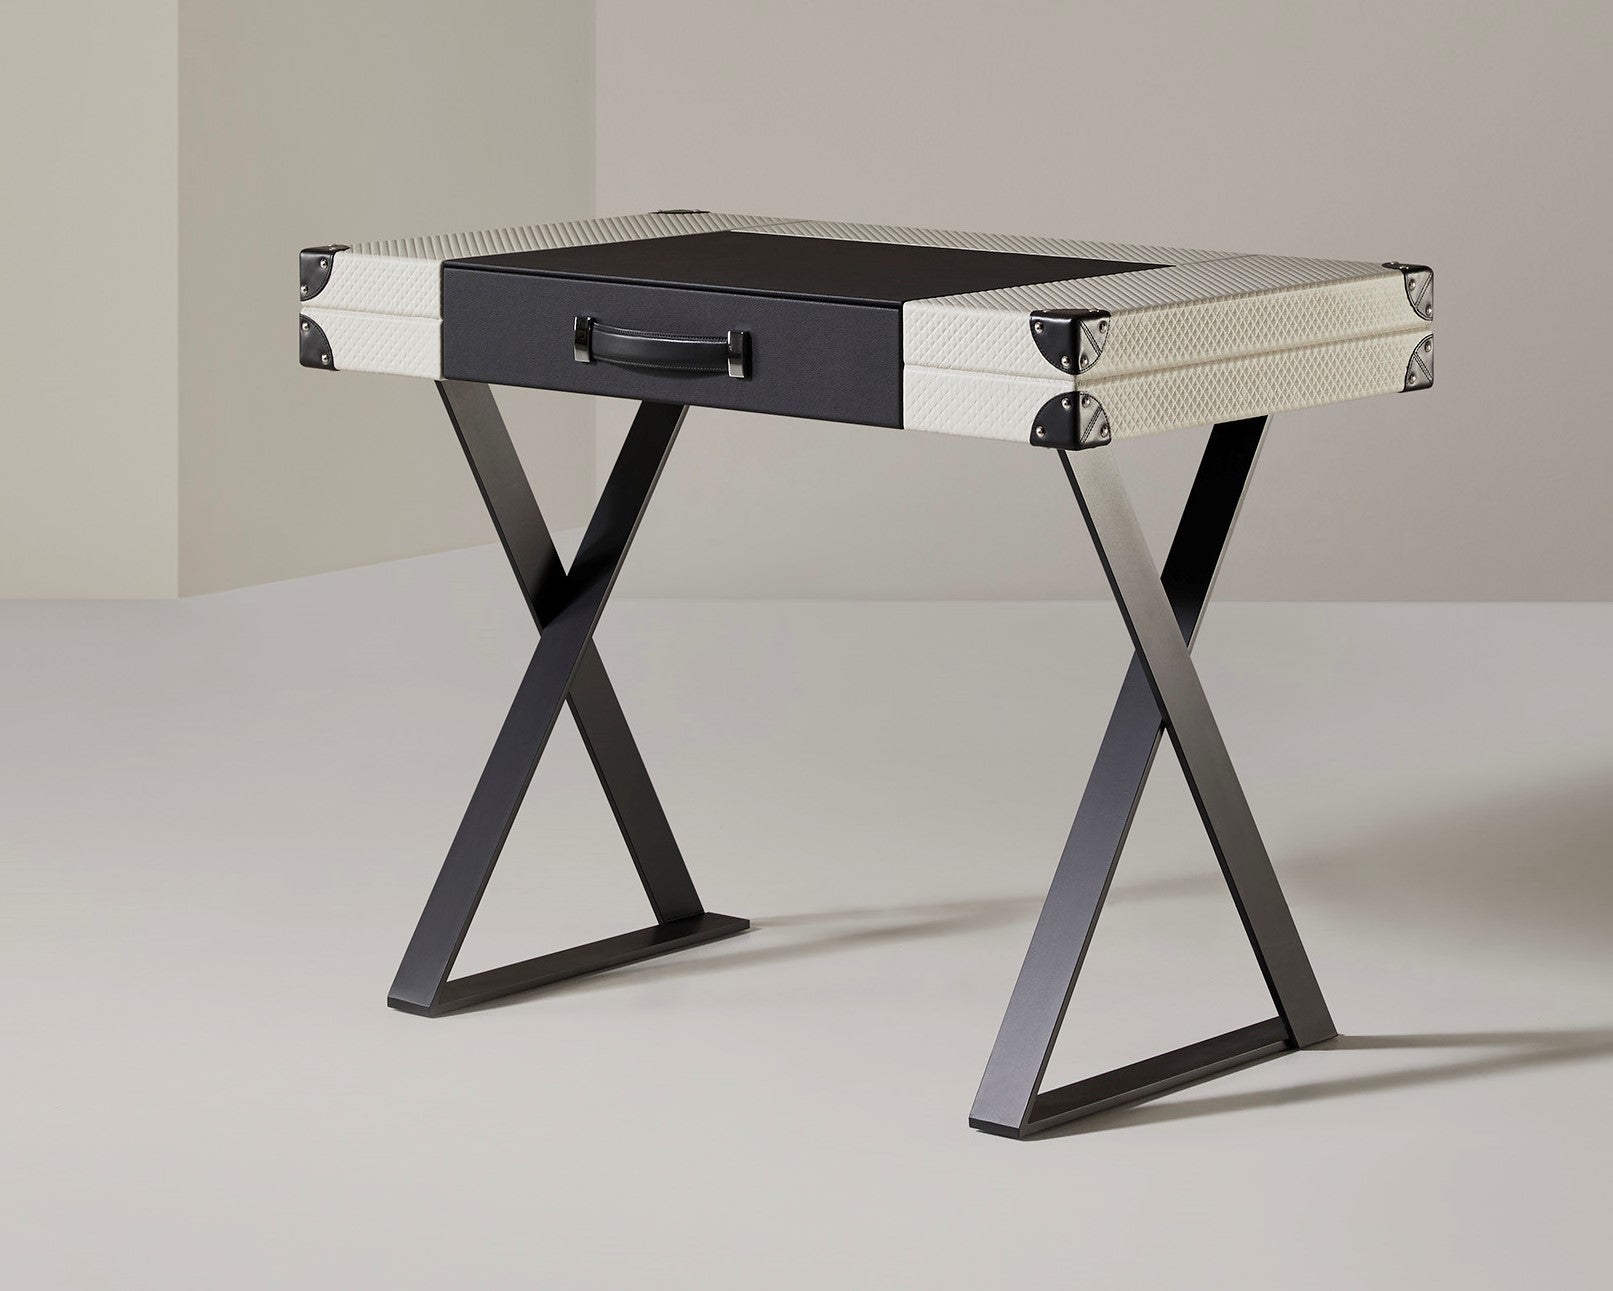 Dieser Schreibtisch erfüllt perfekt alle funktionalen Anforderungen, in Form eines Lederkoffers mit klappbarer Platte aus Leder und Beinen aus Chromstahl, die sich perfekt an jeden Raum in der Wohnung anpassen lassen
Dieser Schreibtisch ist berühmt